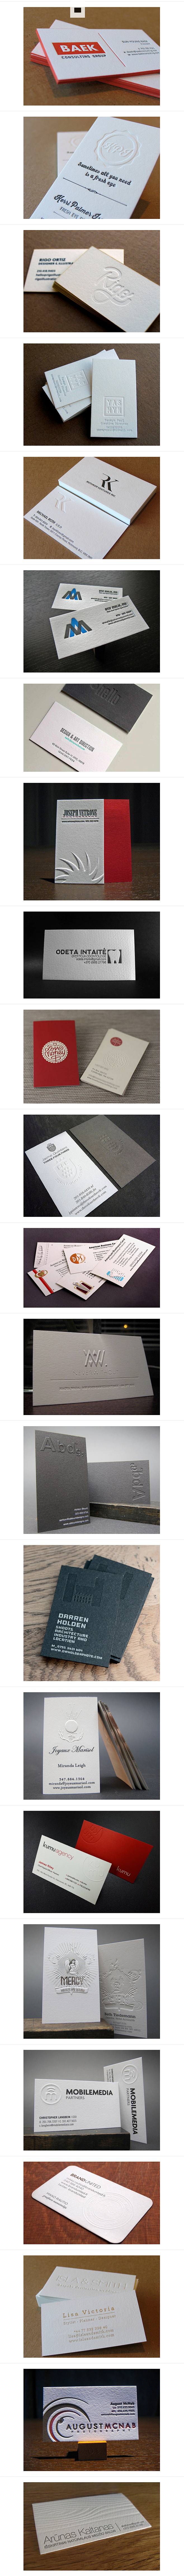 23款印刷商务卡名片设计欣赏 设计圈 展...